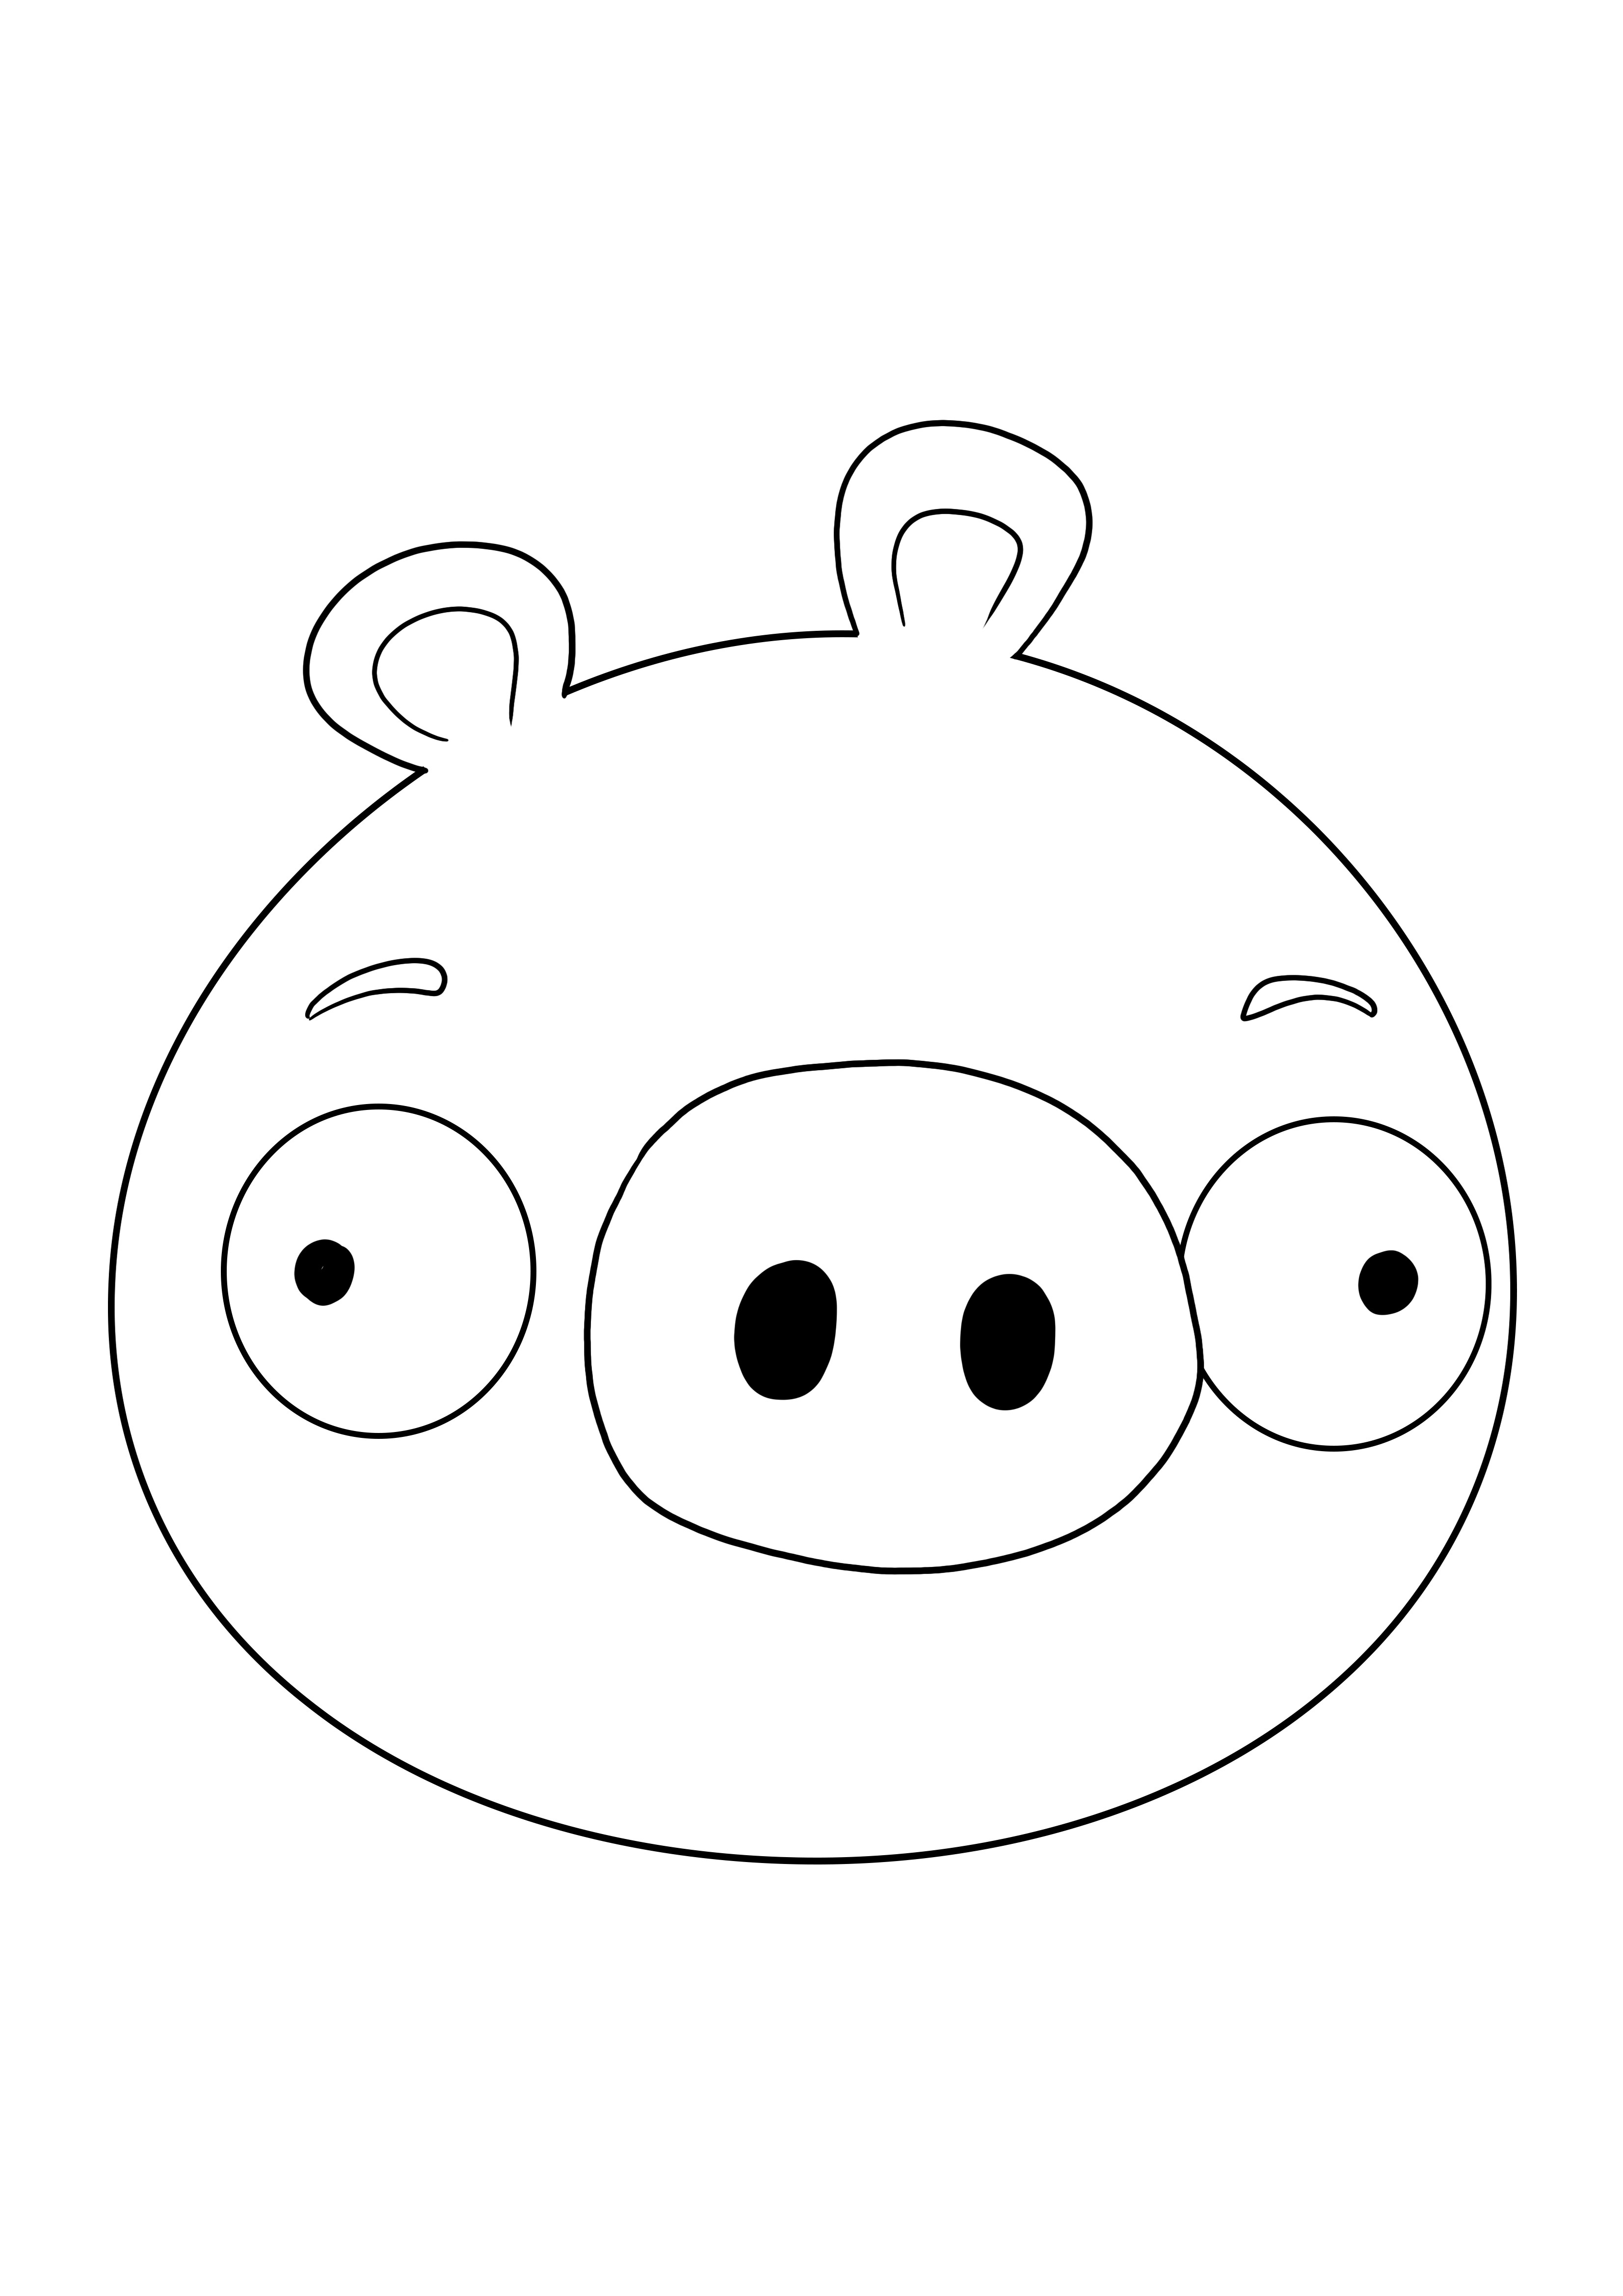 La cara de los cerdos Minion está lista para ser impresa y coloreada gratis imagen